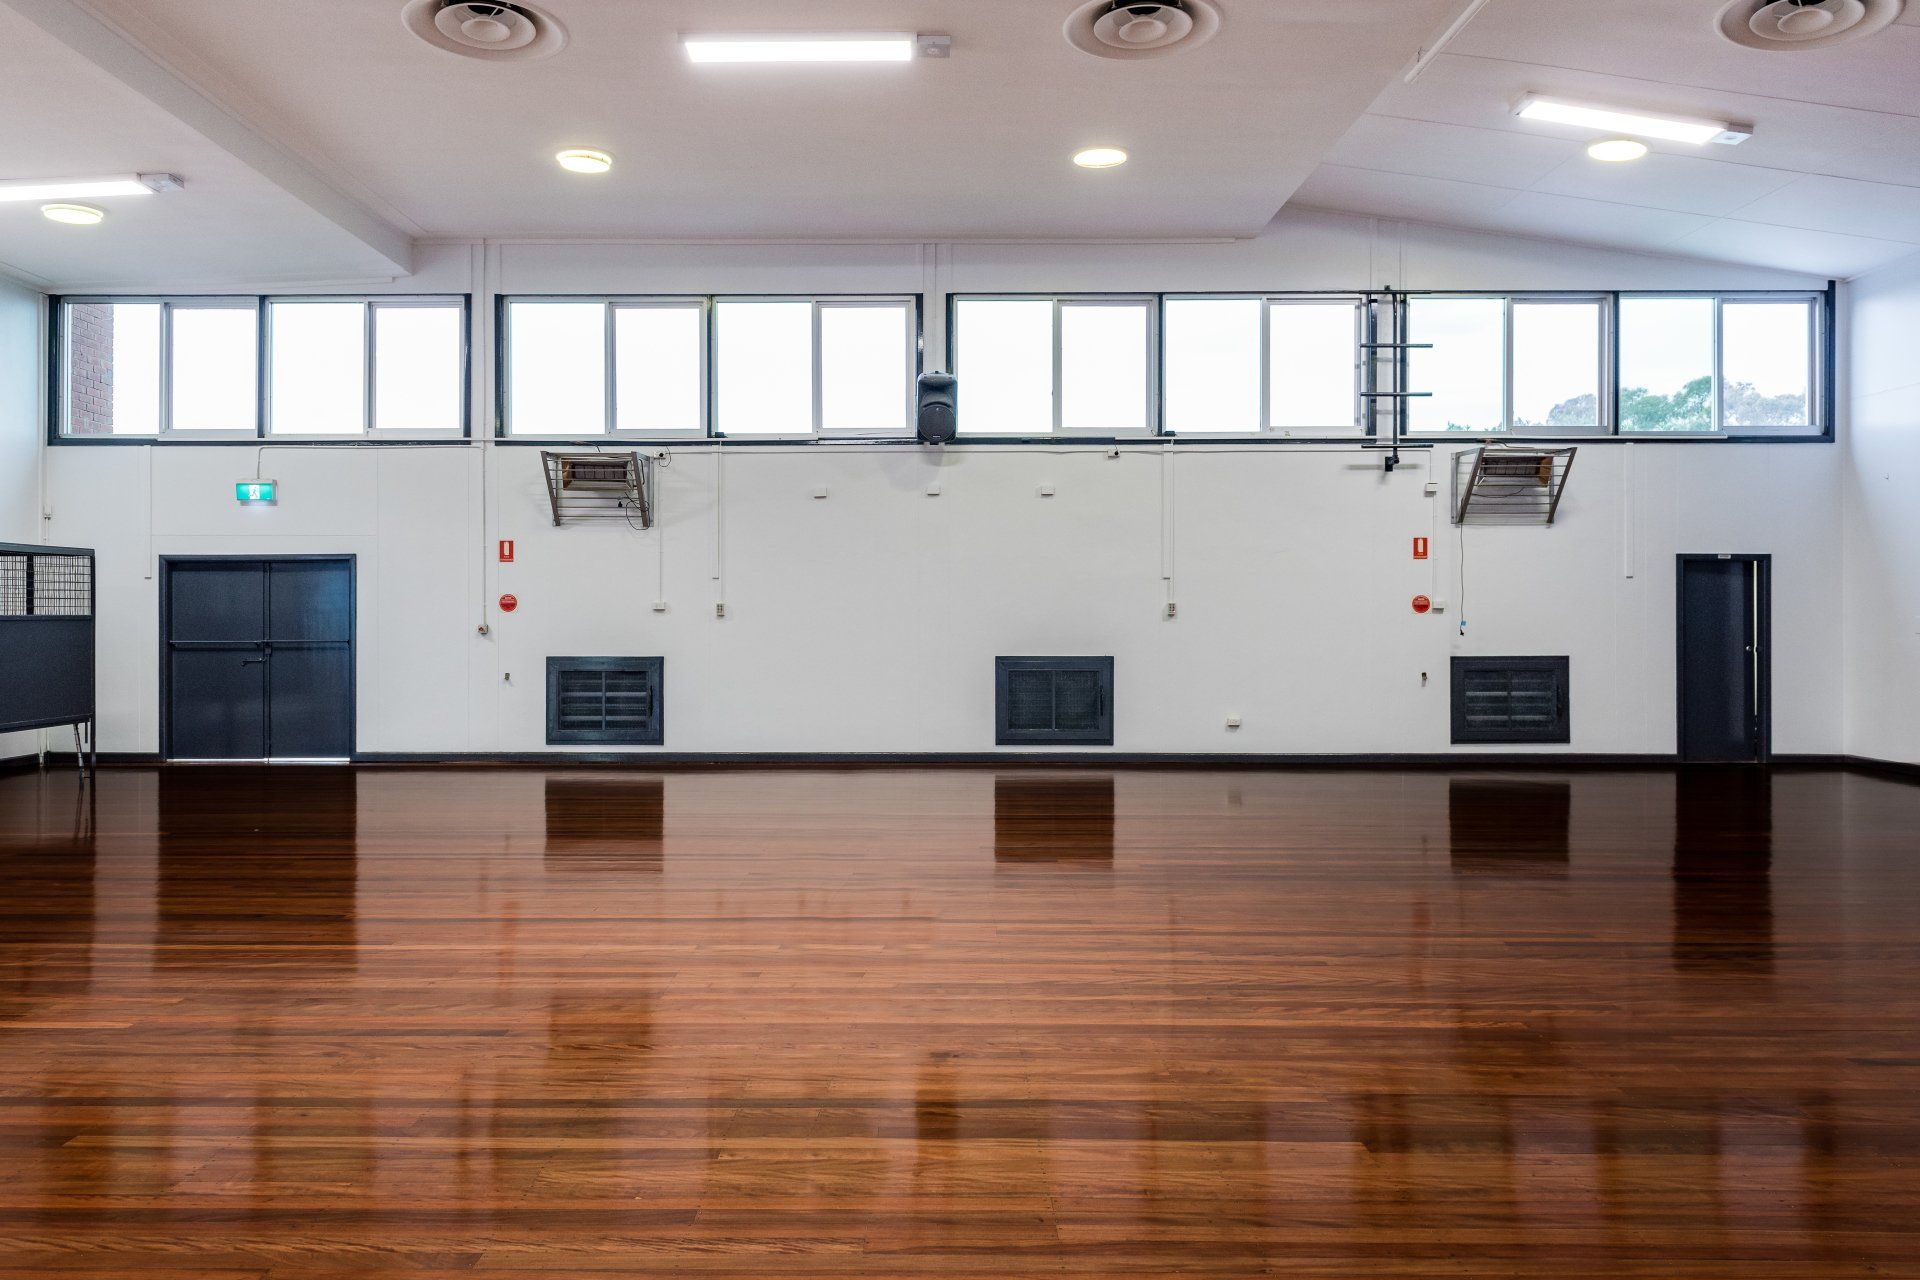 indoor court